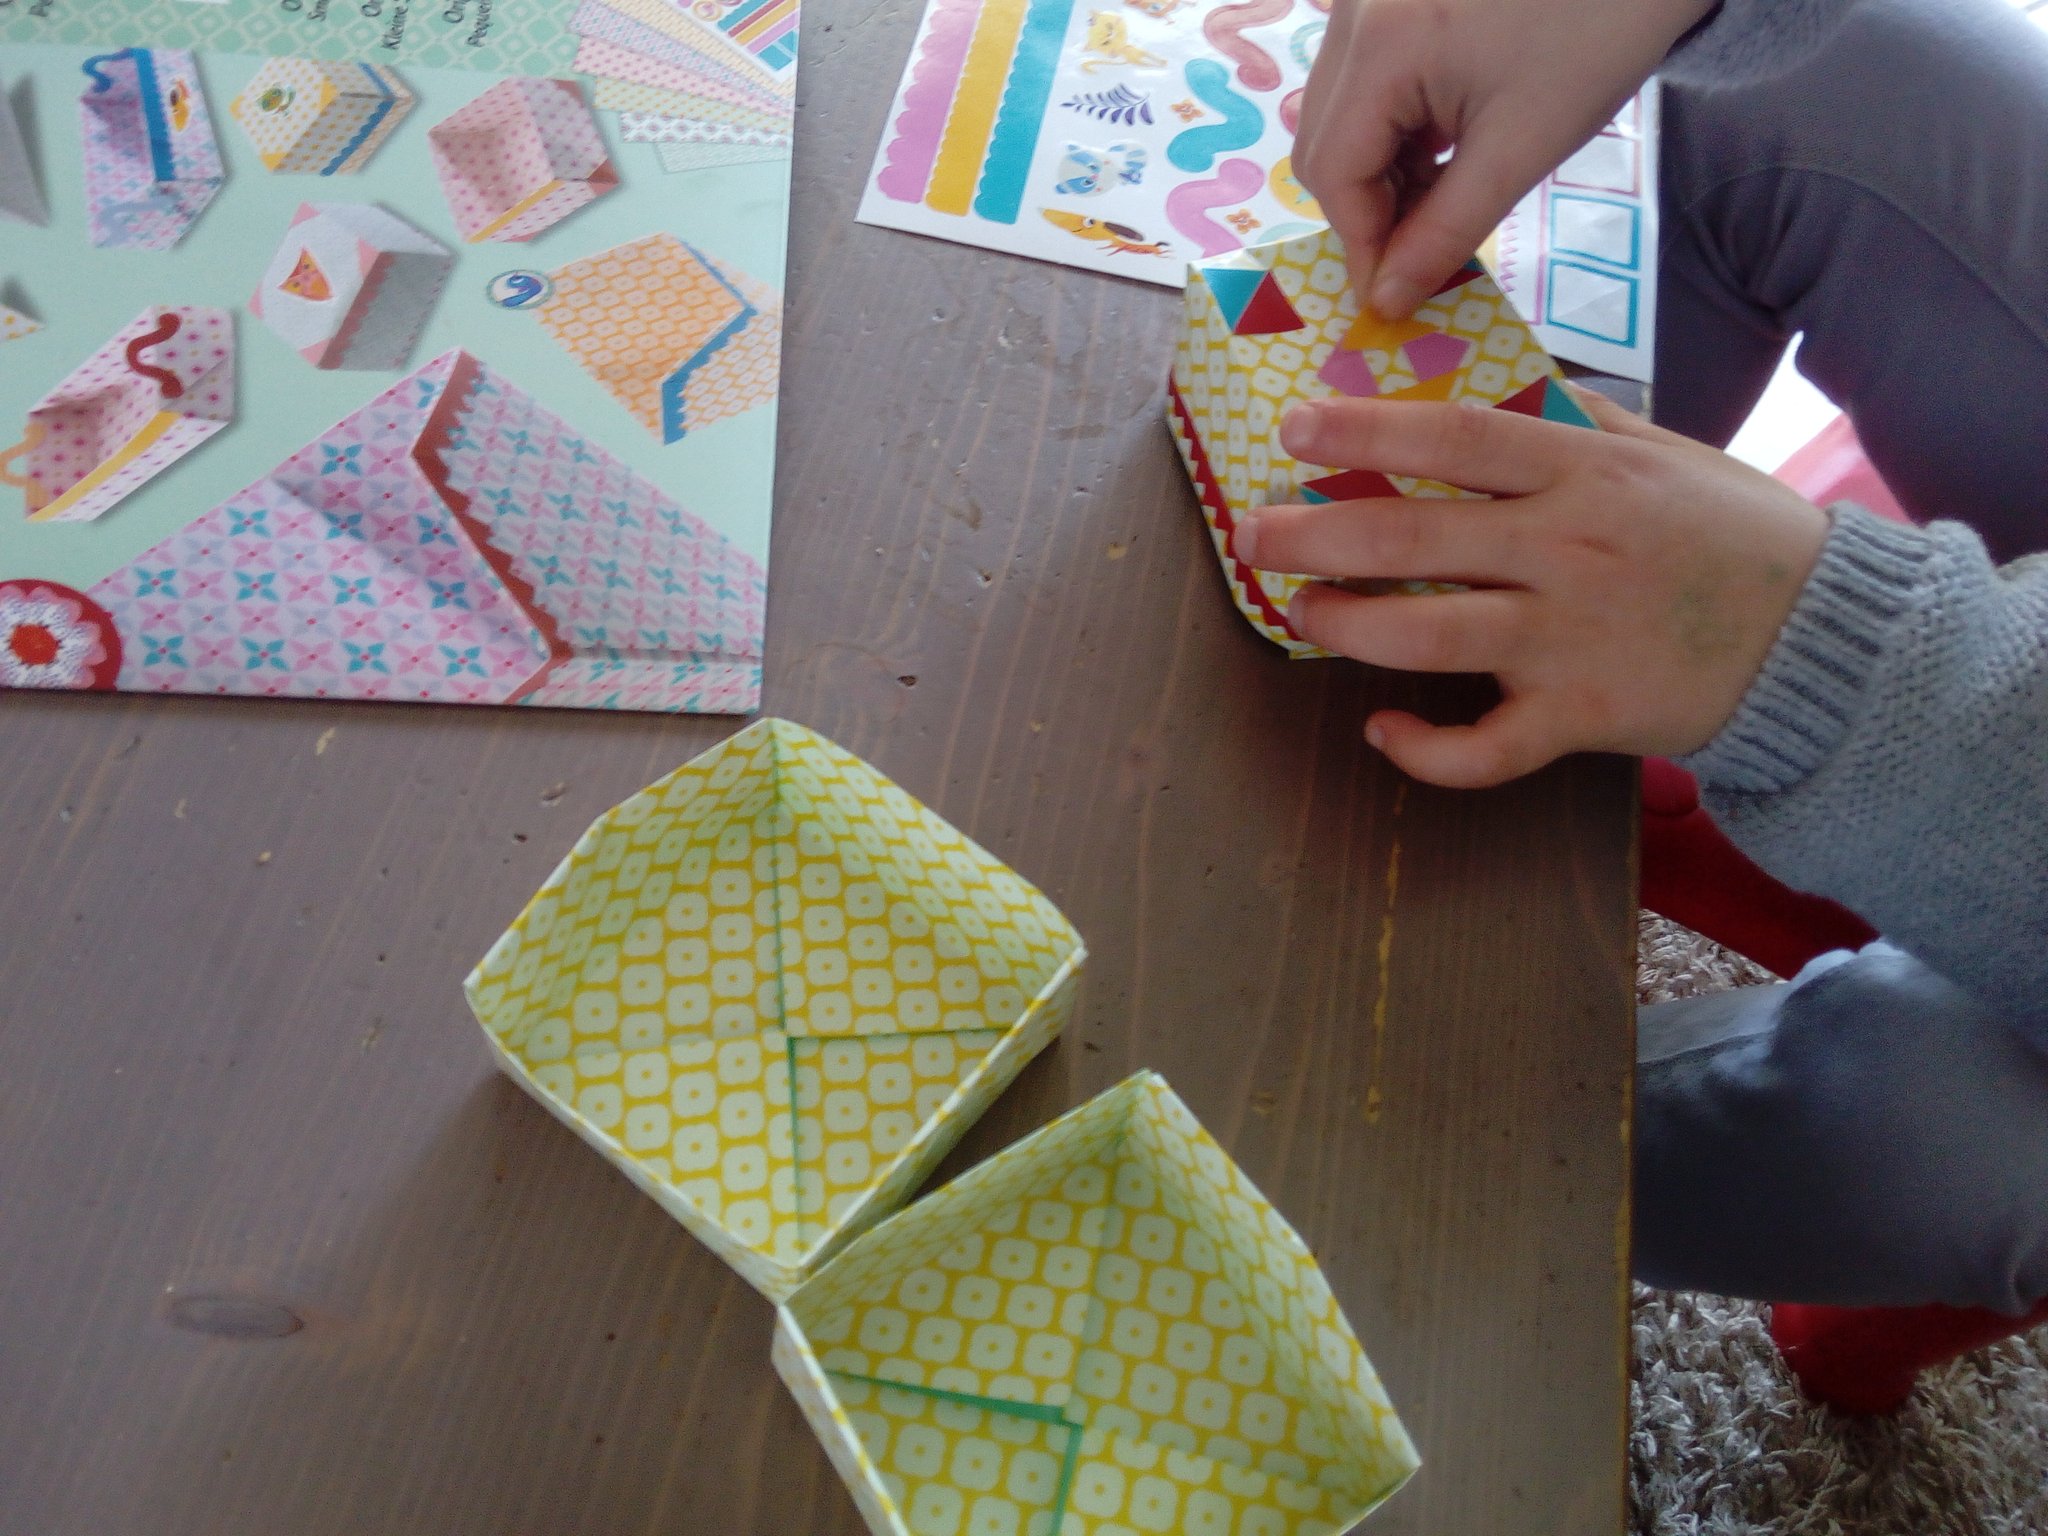 L'origami : Un outil d'apprentissage incroyable pour vos enfants